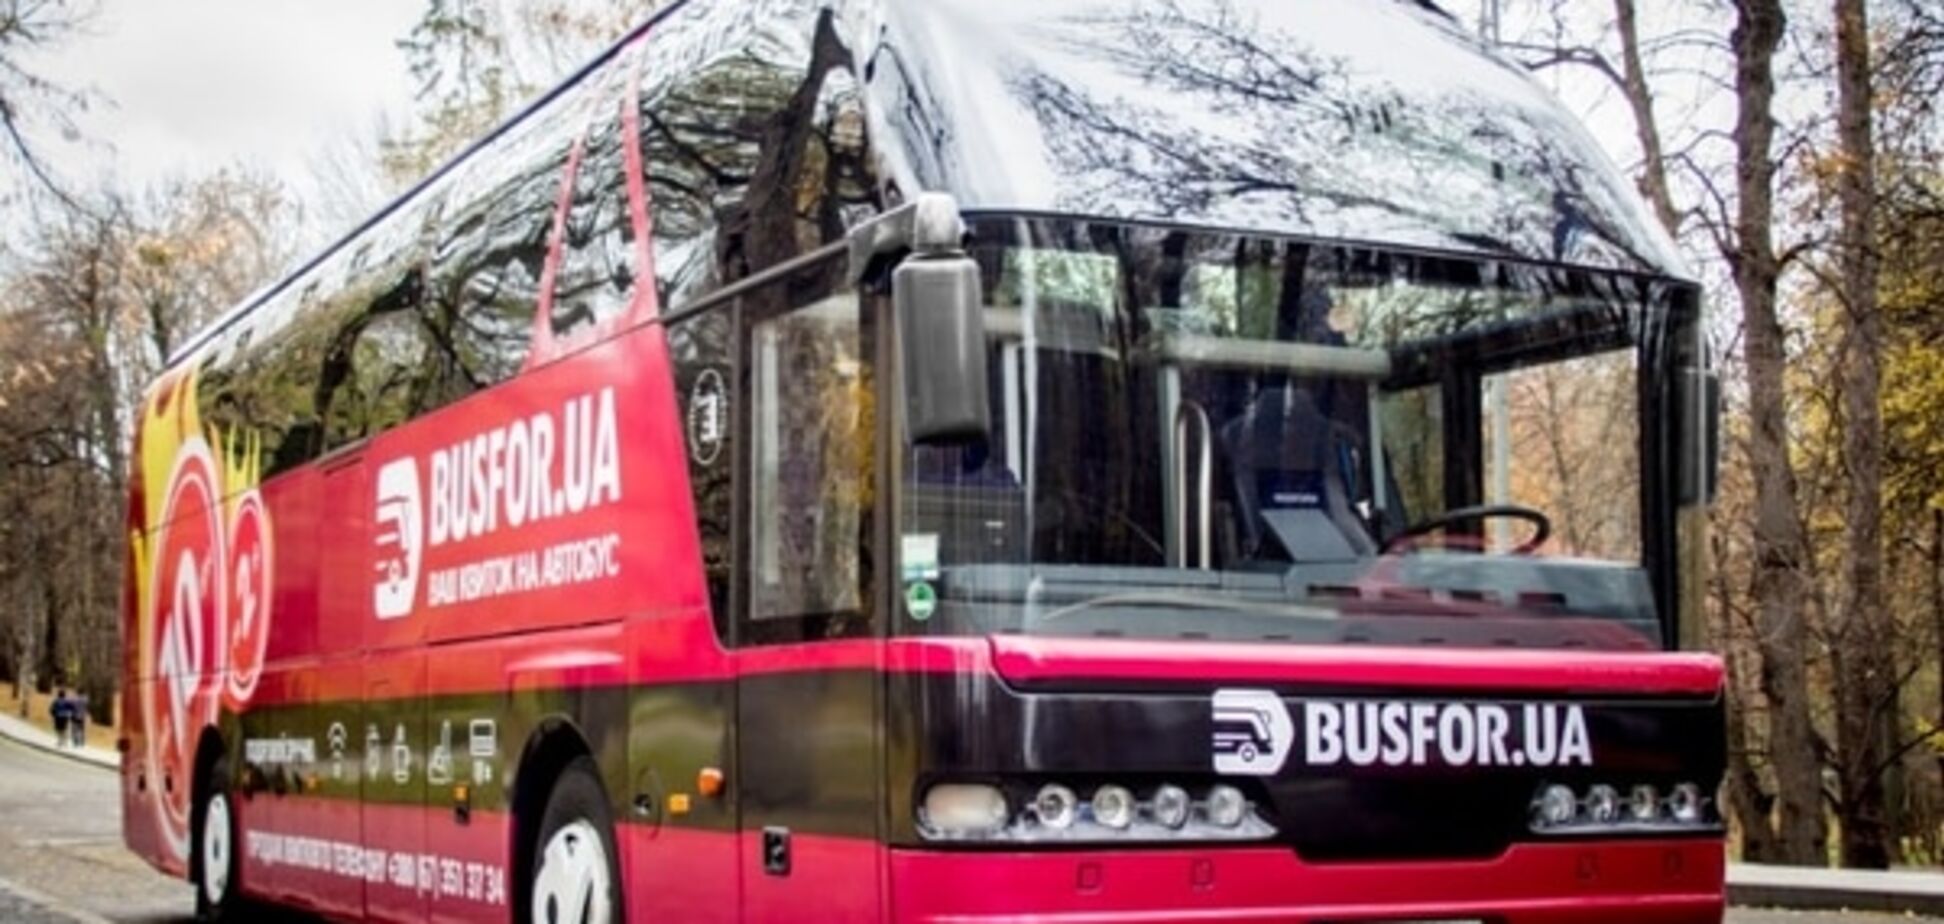 Фирменные автобусные рейсы – новое слово в бюджетных путешествиях